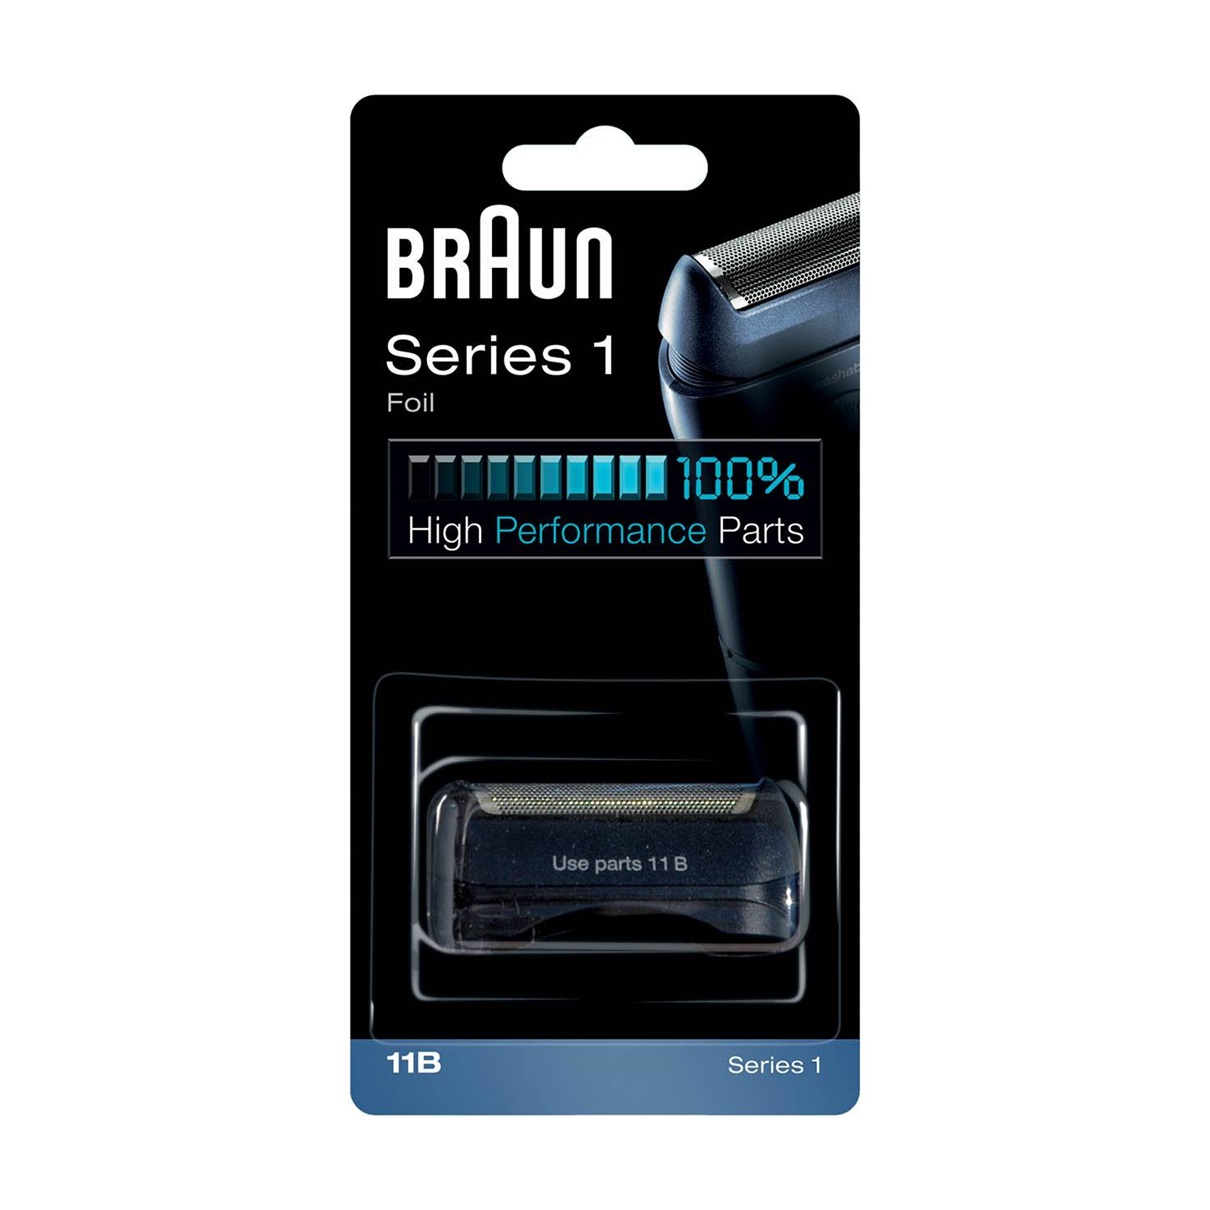 Сетка и режущий блок для бритв Braun 11B сетка и режущий блок для электробритвы braun series 1 11b